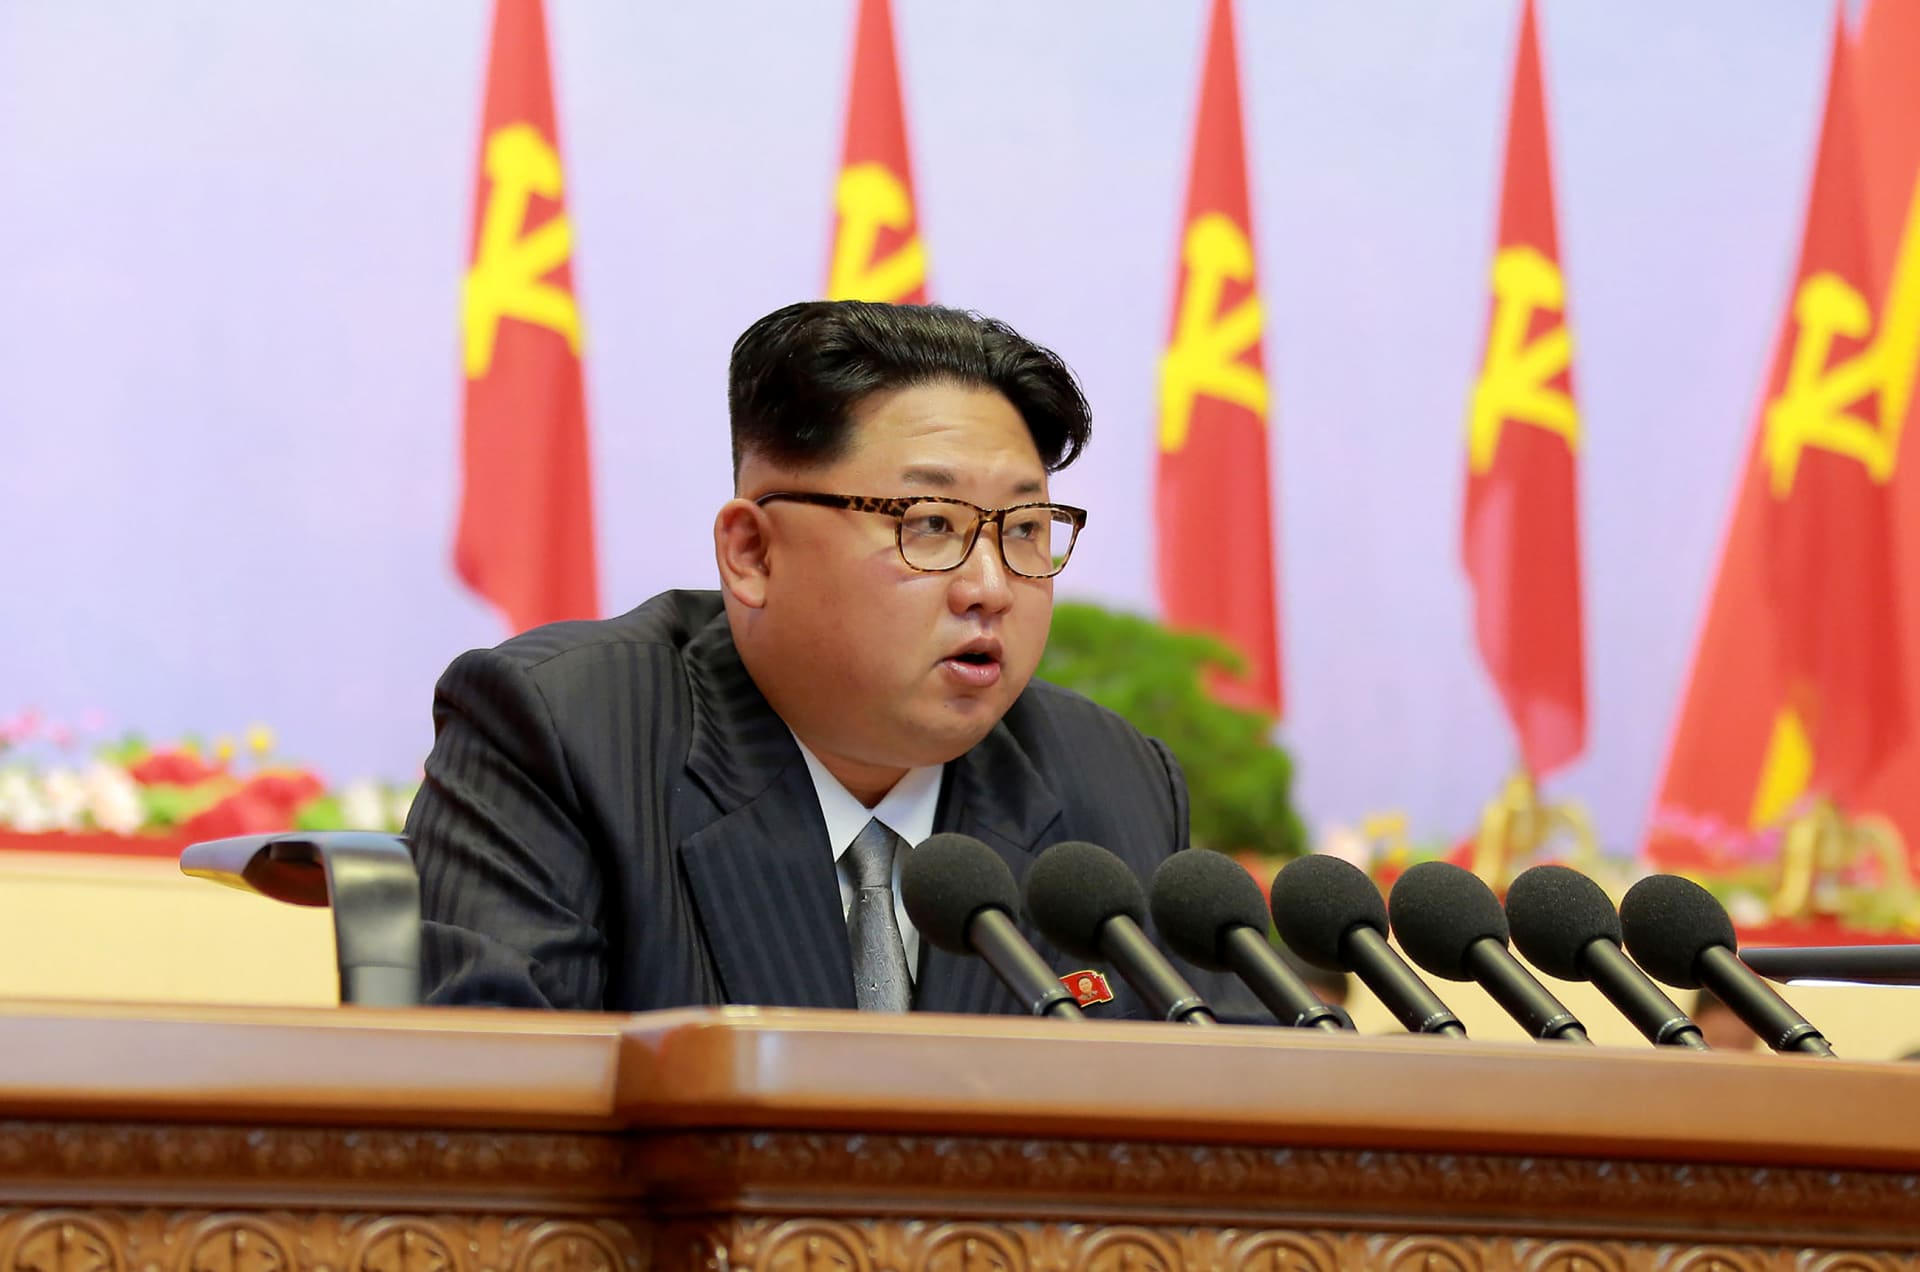 كوريا الشمالية تطرد مراسل شبكة "BBC" من الدولة.. ما الذي ارتكبه ليستحق سخط كيم جونغ أون؟